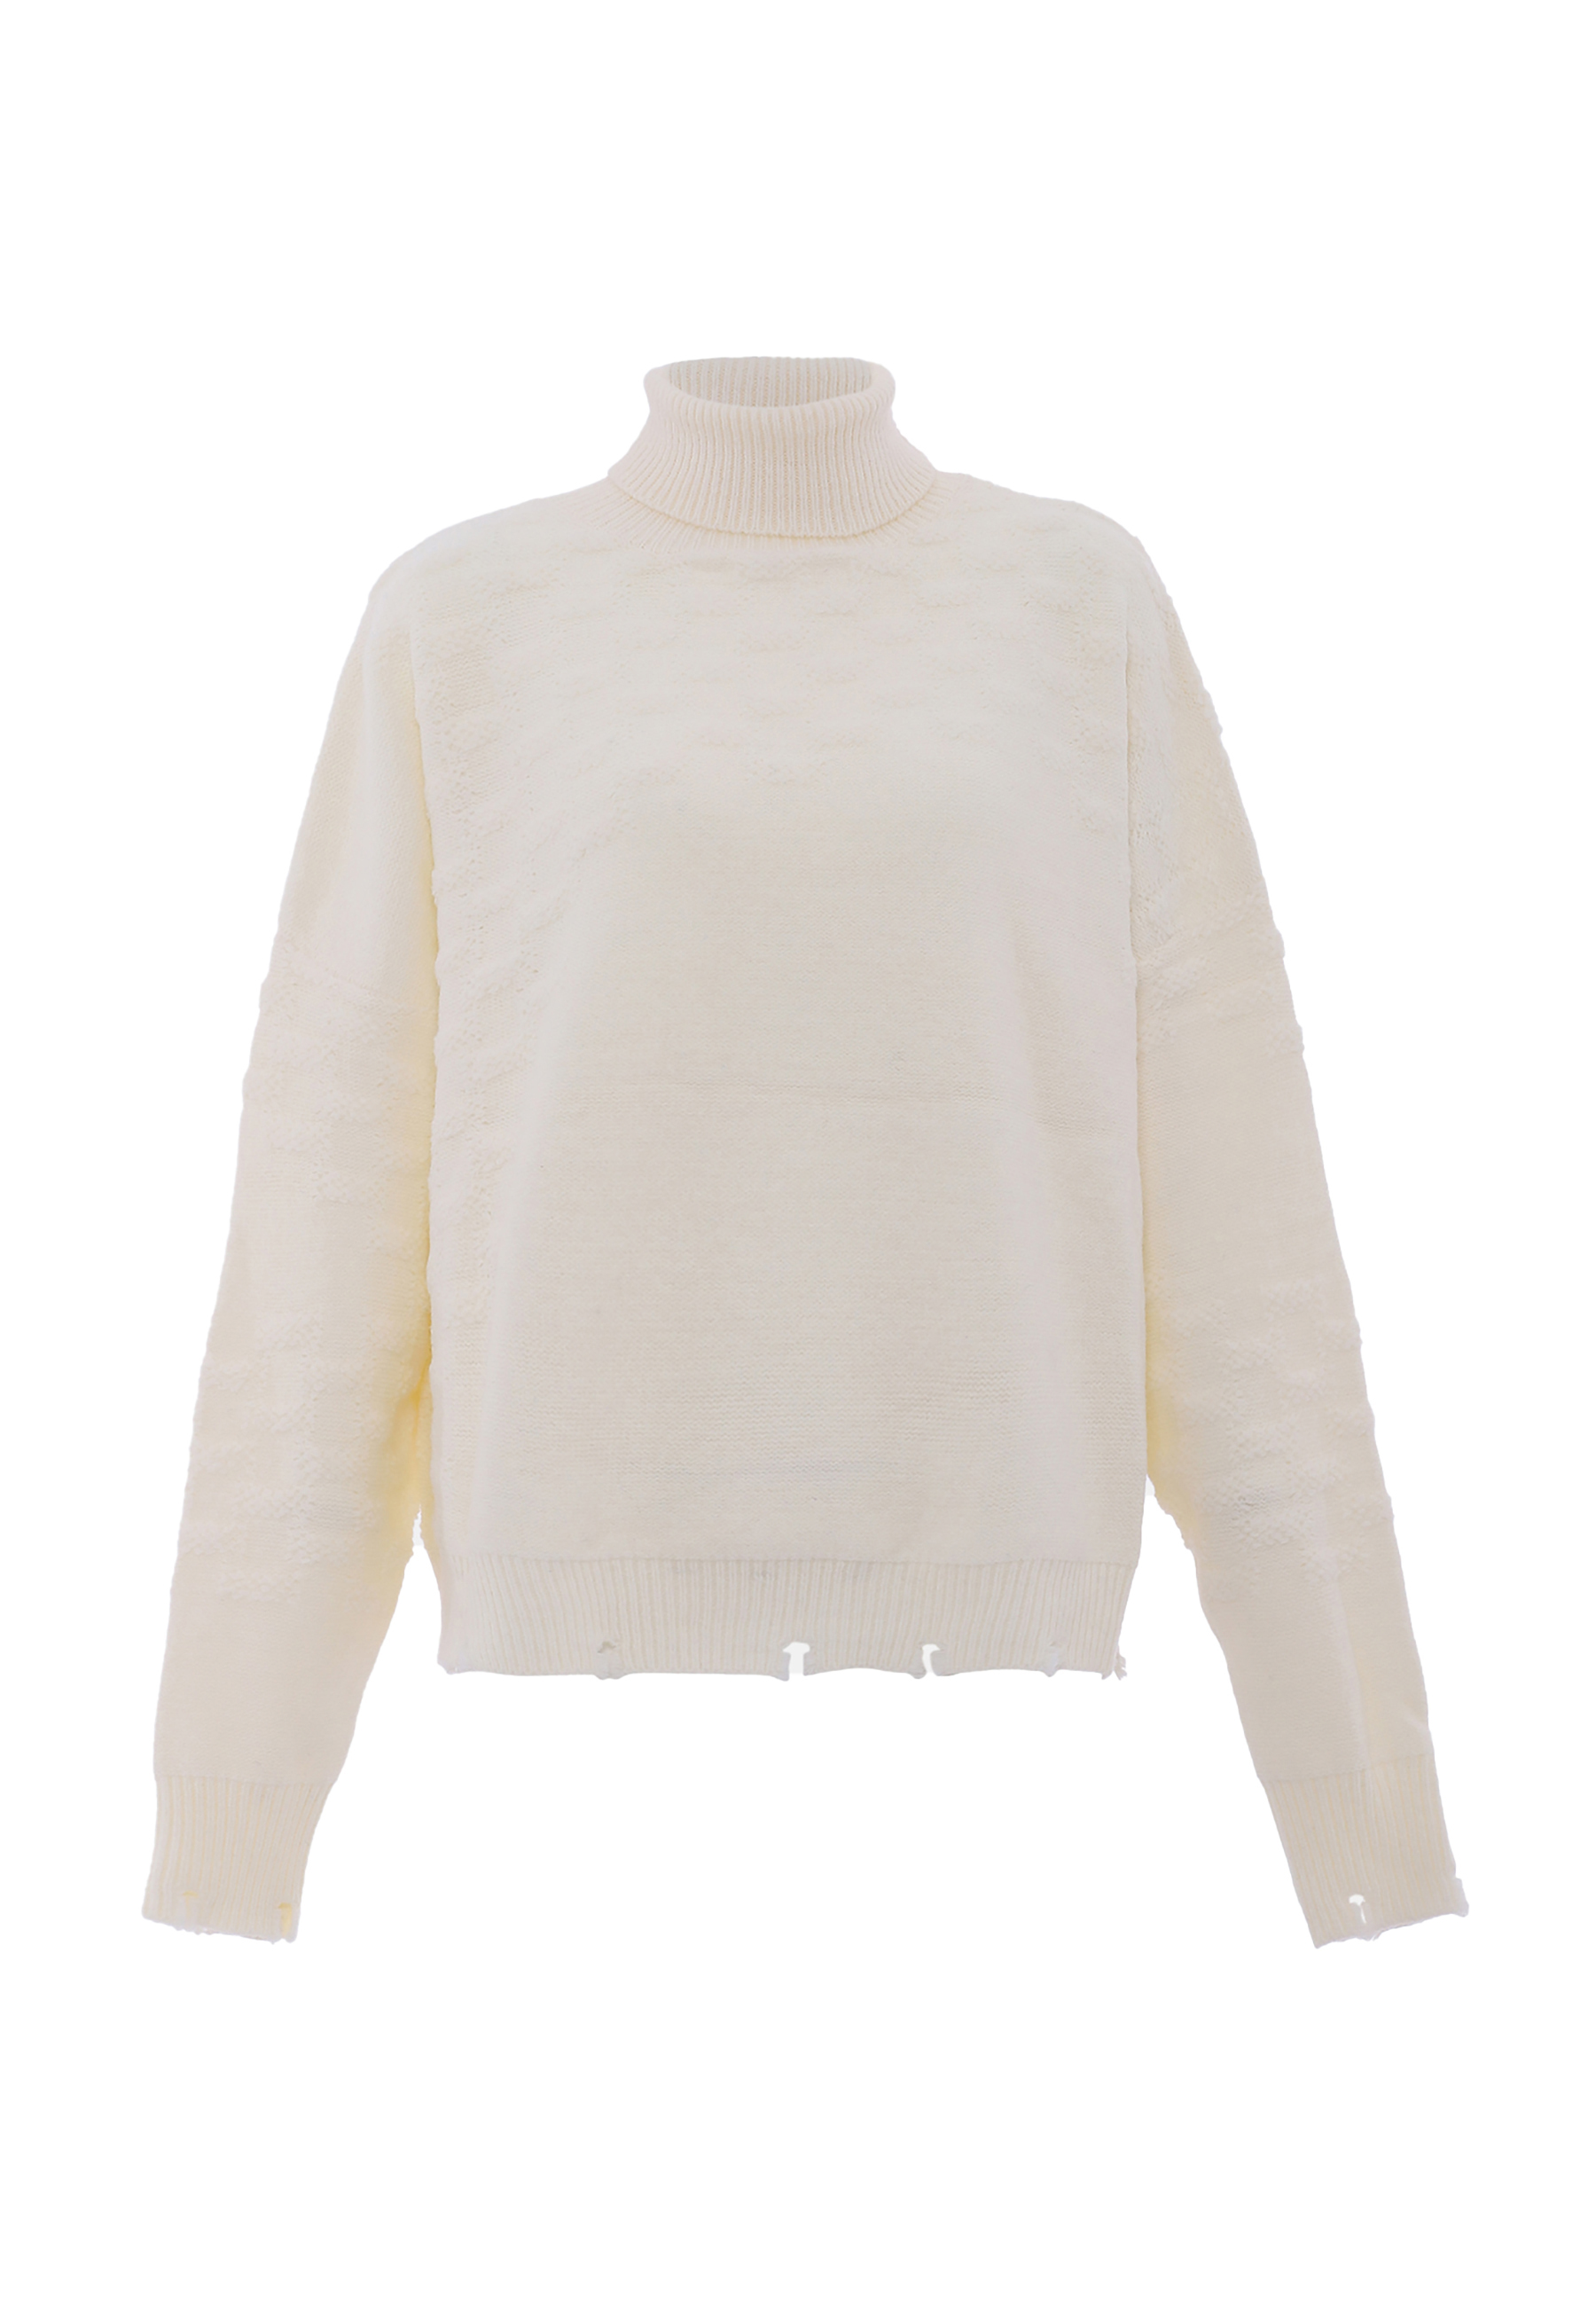 Свитер FENIA Sweater, белый свитер fenia sweater белый